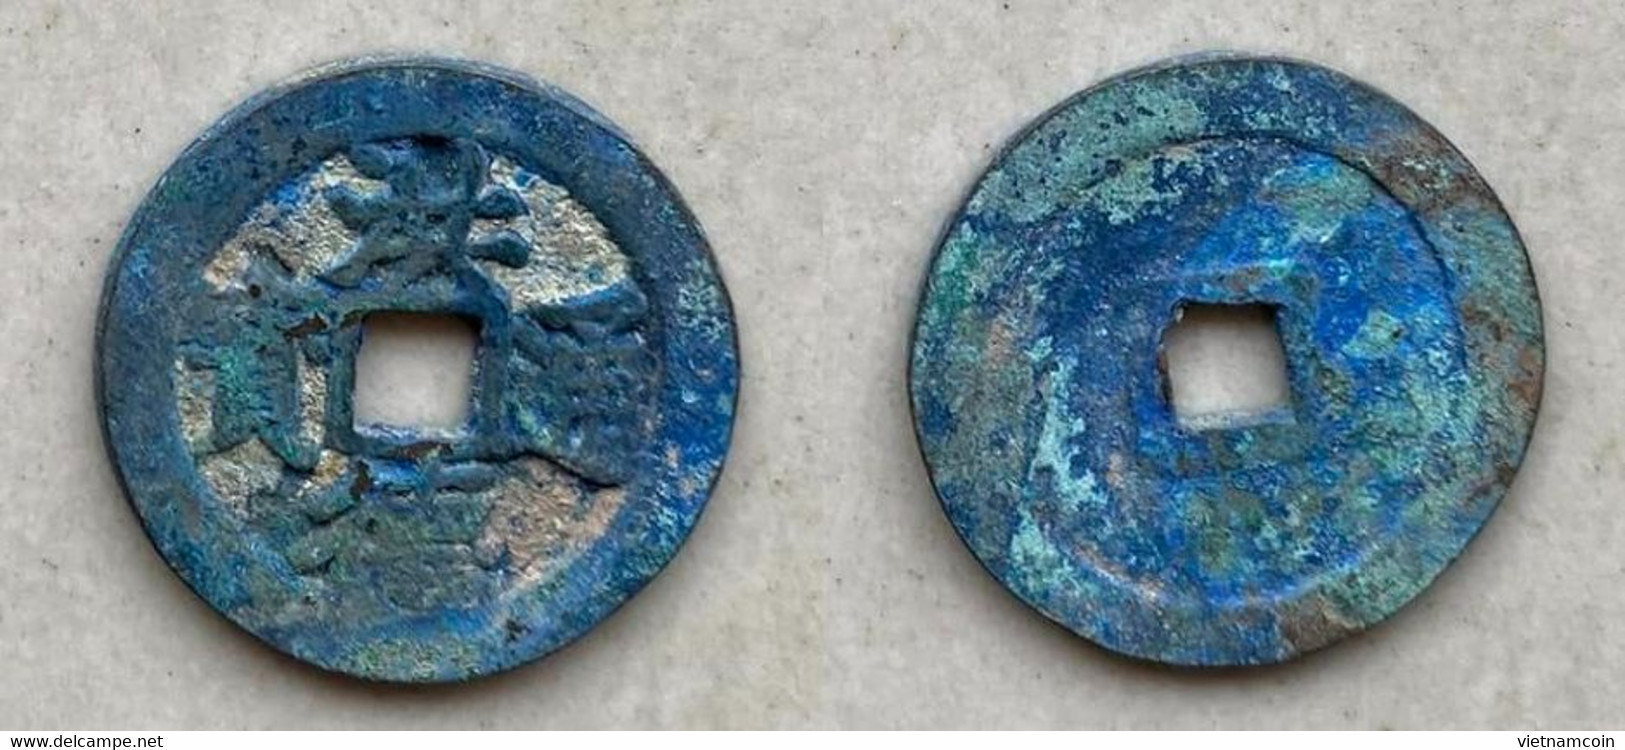 Ancient Annam Coin Hong Duc Thong Bao 1470-1497 - Viêt-Nam